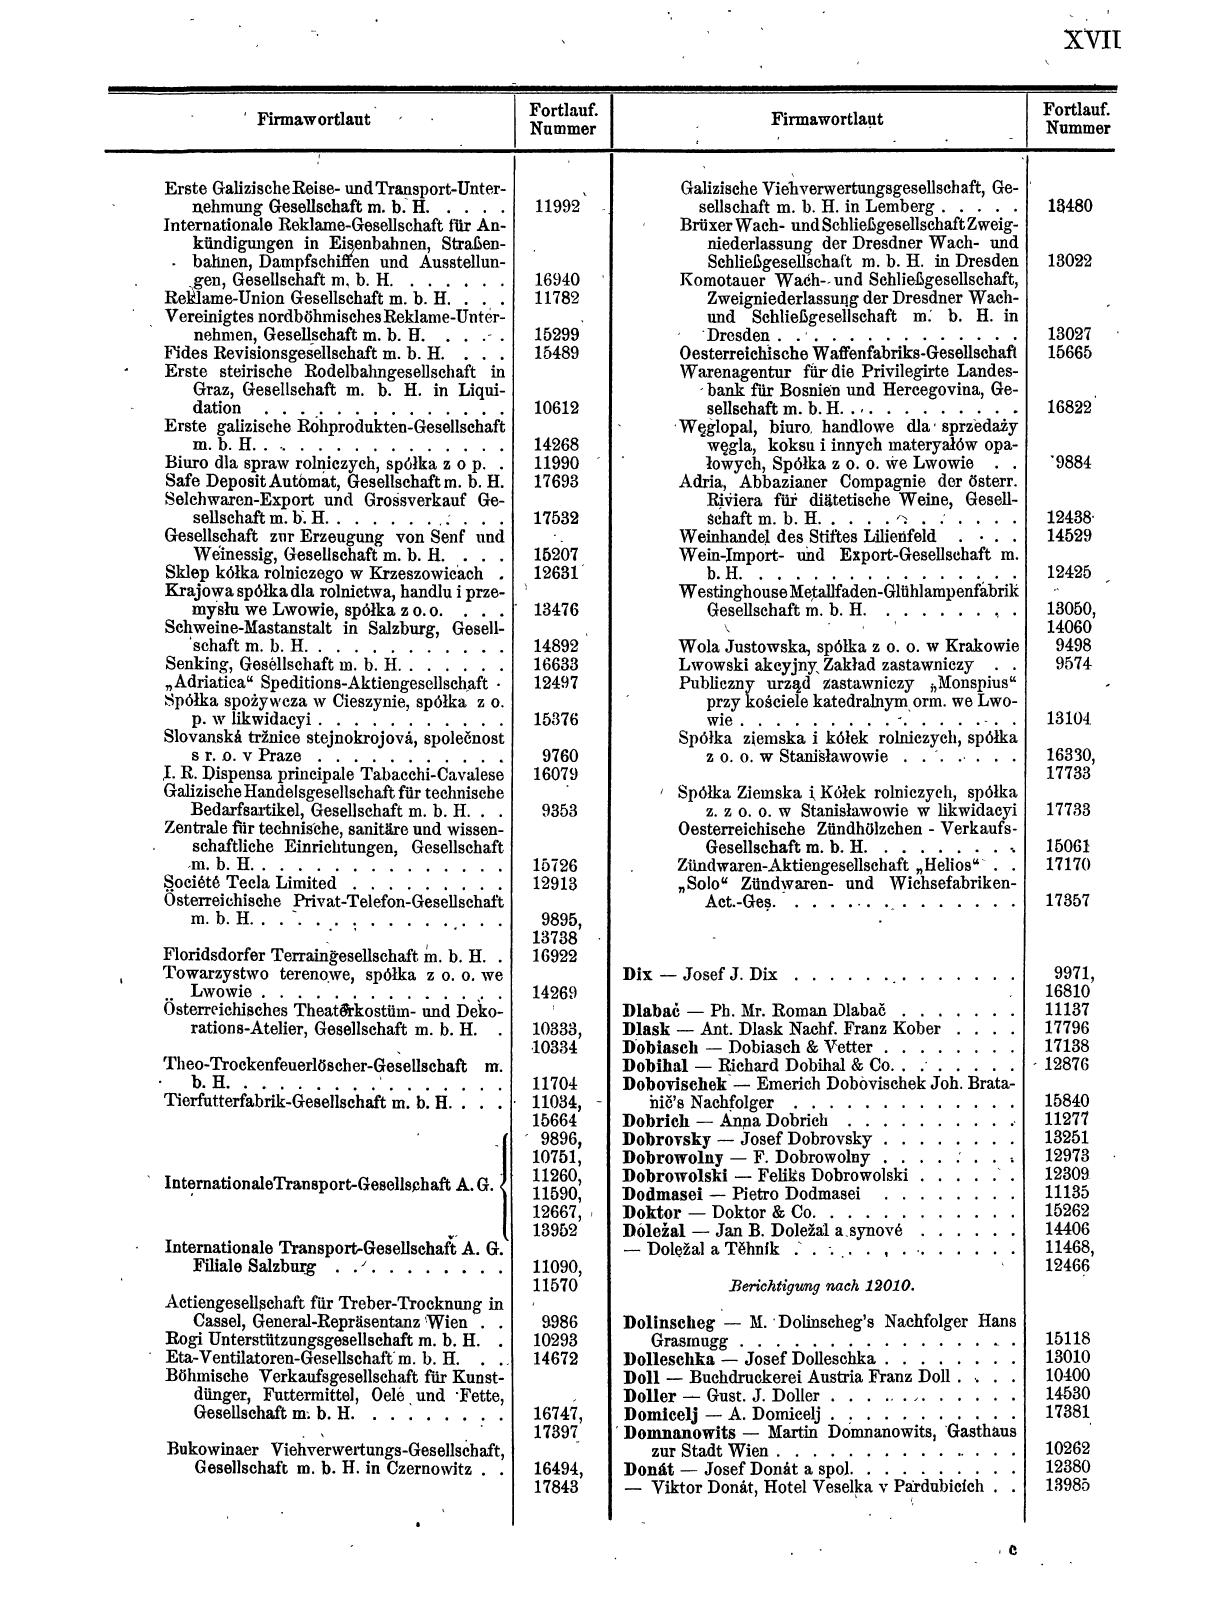 Zentralblatt für die Eintragungen in das Handelsregister 1913, Teil 2 - Seite 21